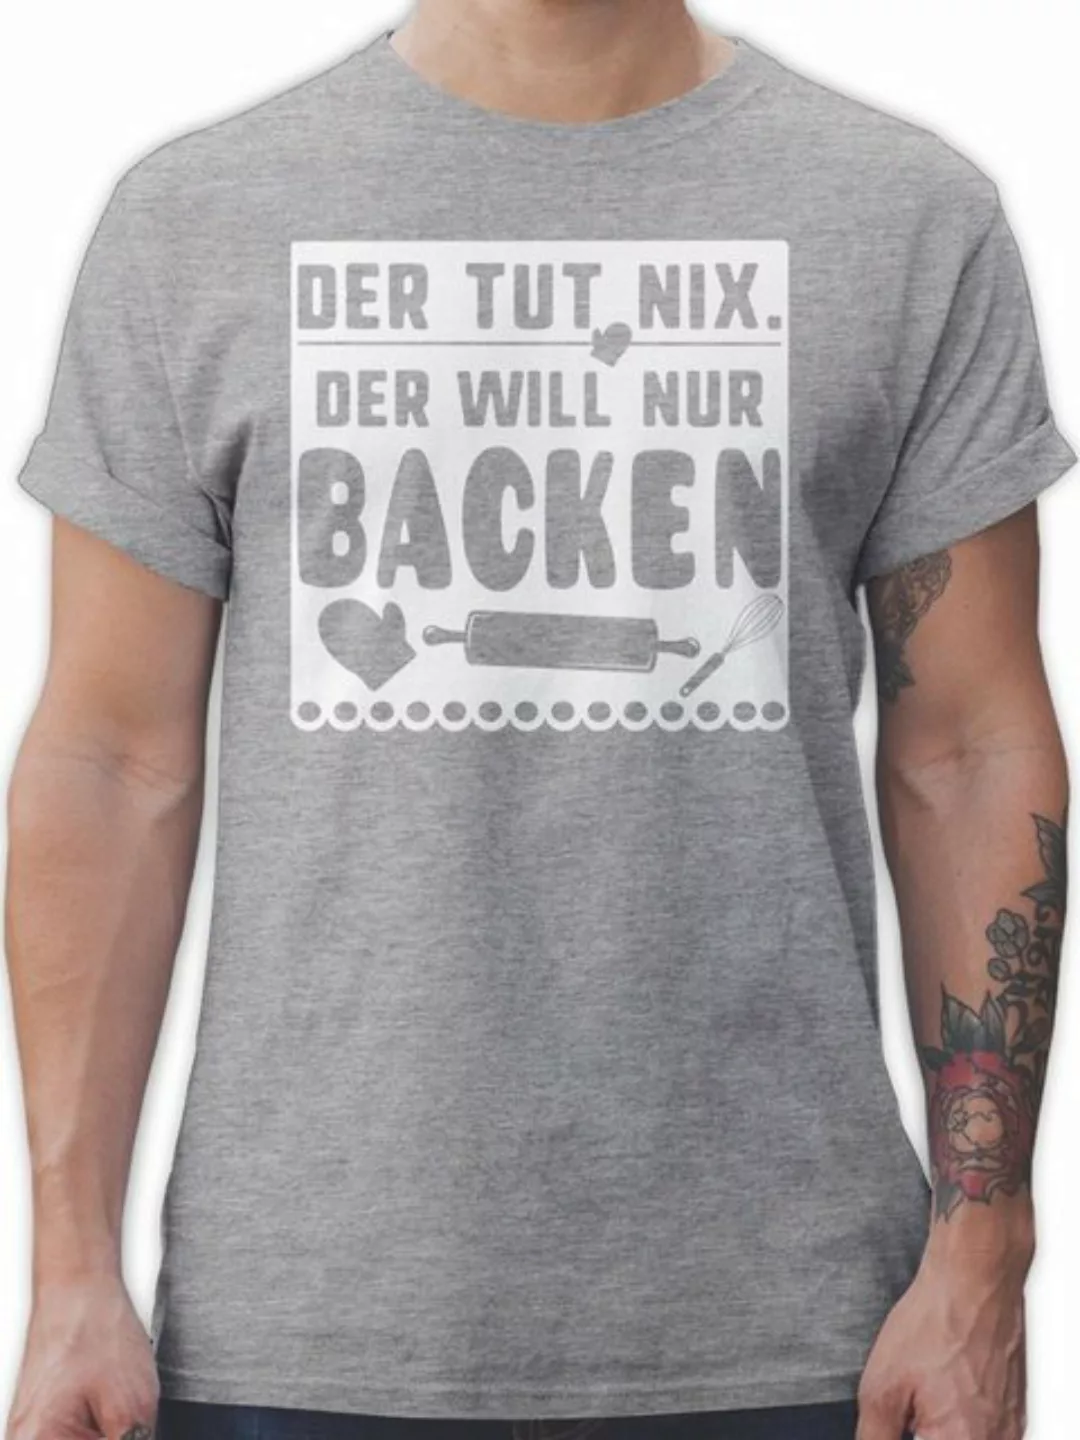 Shirtracer T-Shirt Der tut nix der will nur backen Küche günstig online kaufen